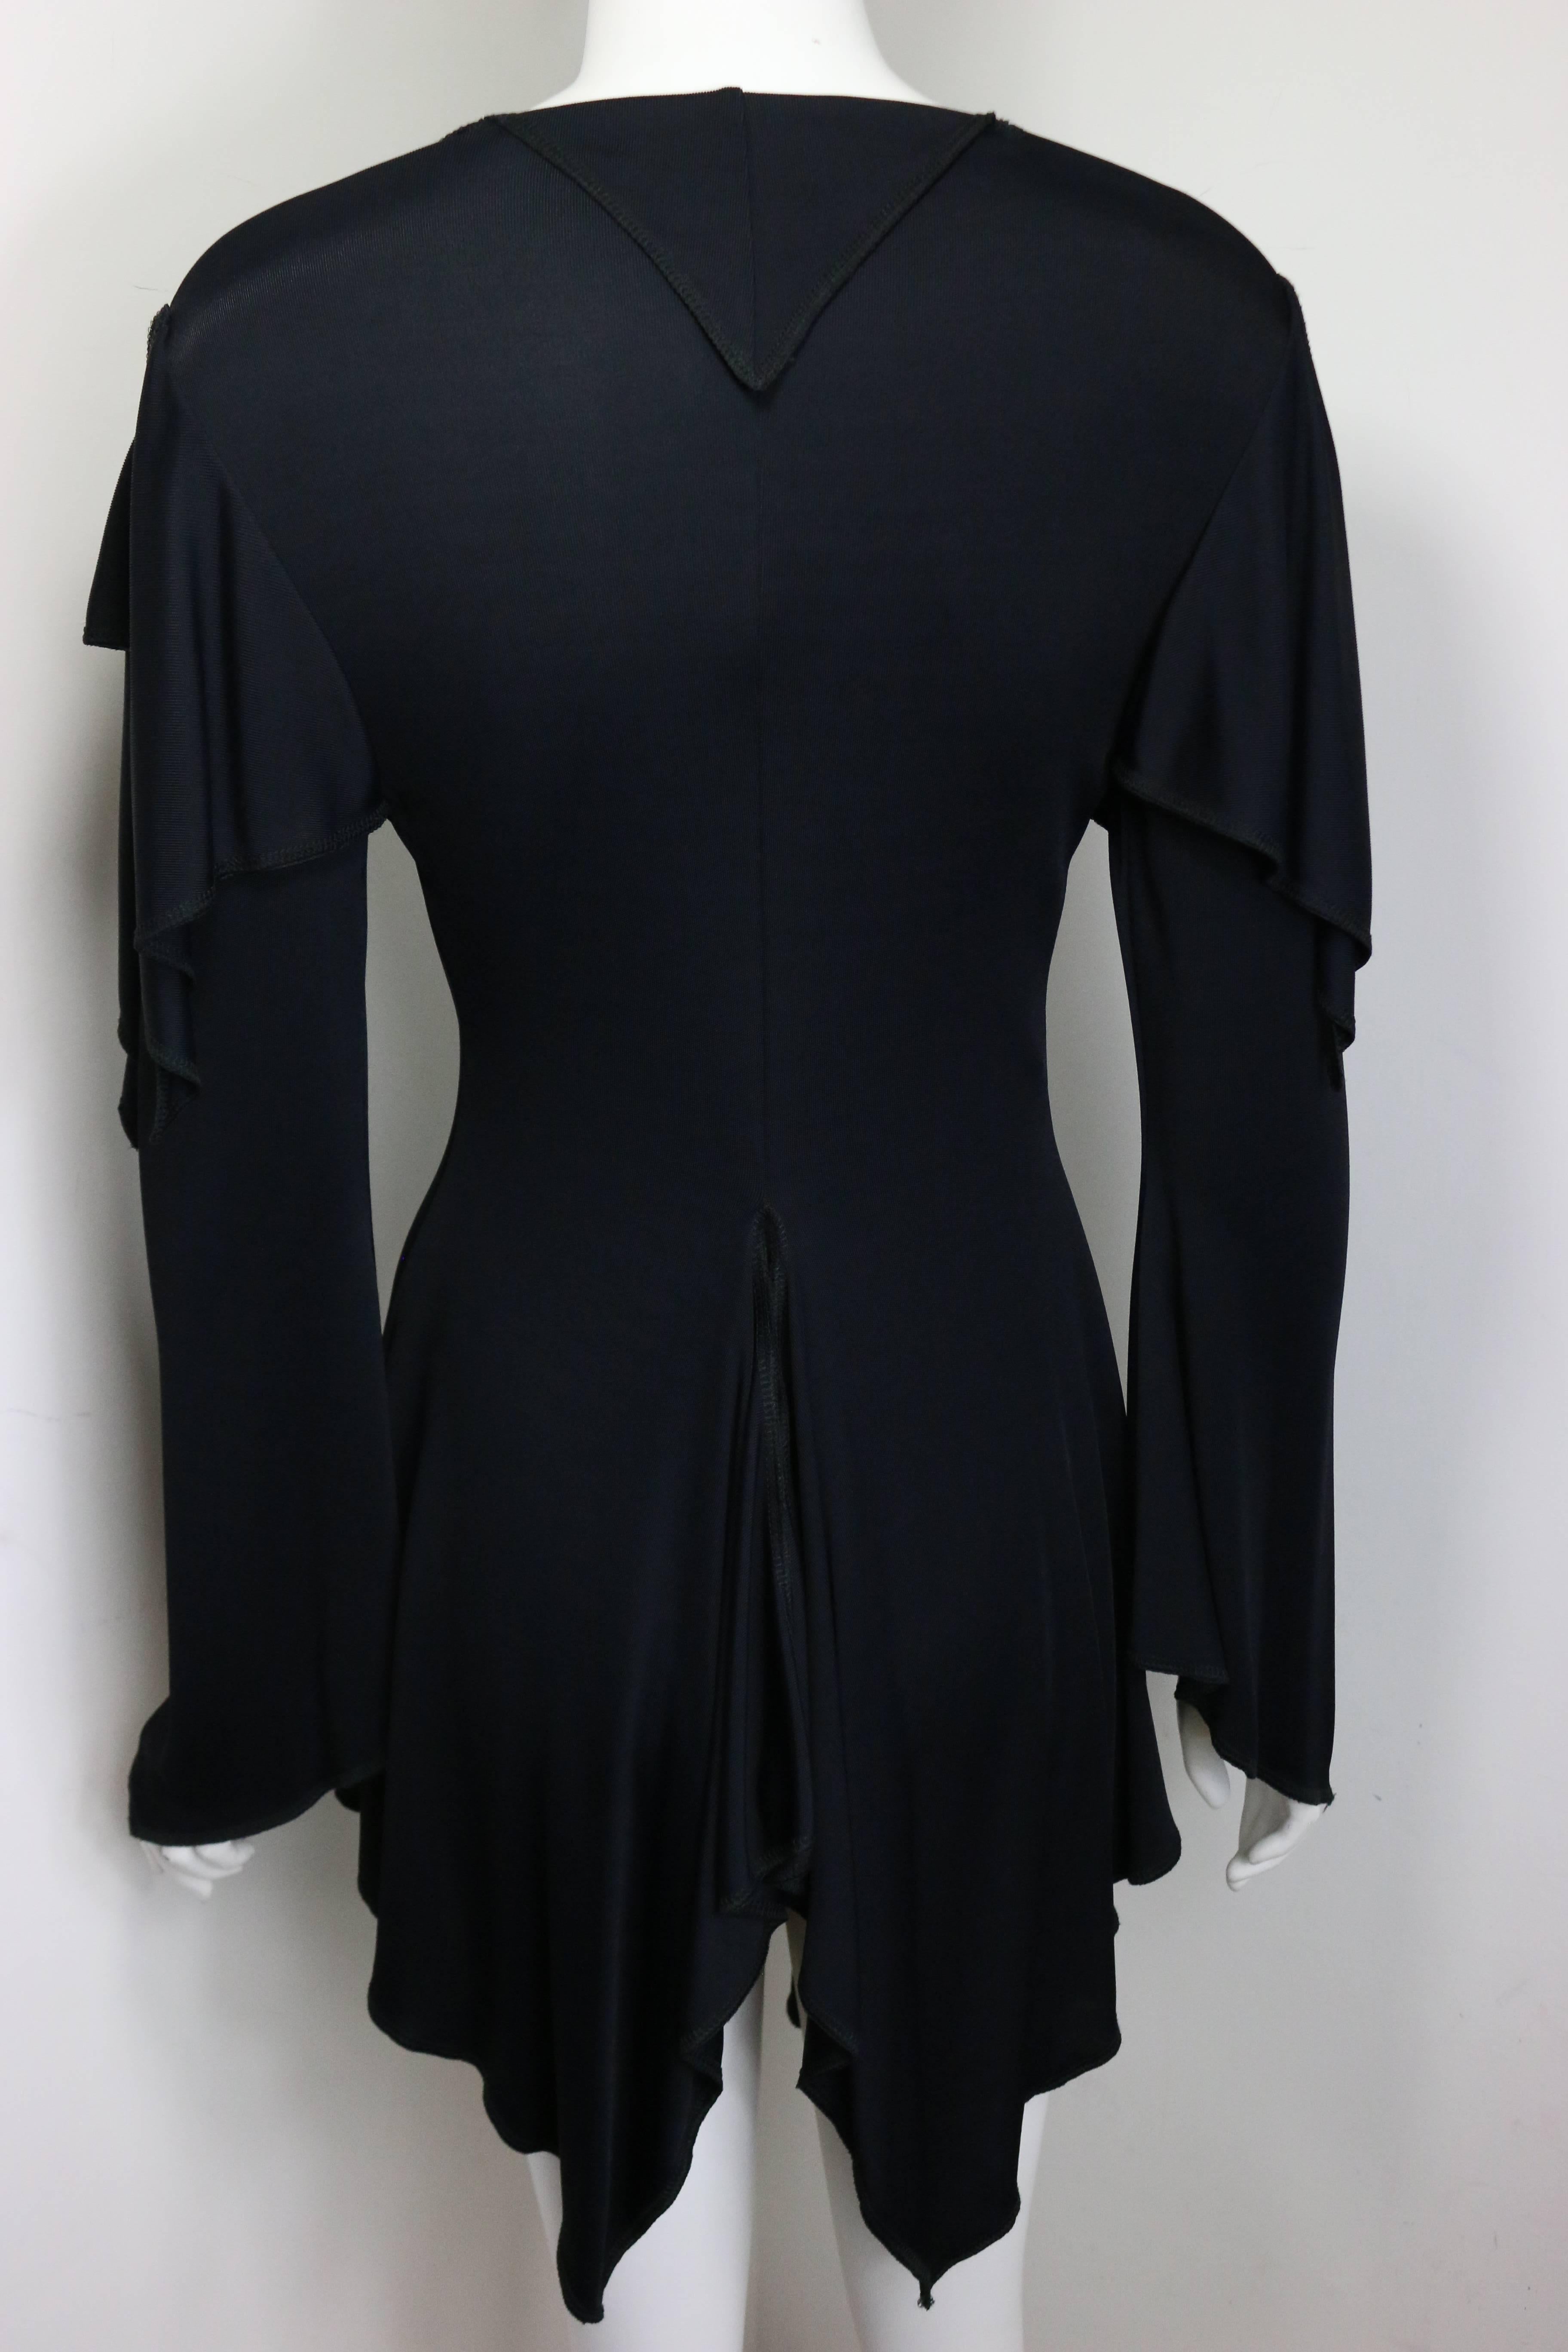 - Ce magnifique et unique cardigan mi-long noir vintage du début des années 90 de Moschino Couture se ferme par une lanière. Avec une couche supplémentaire sur les épaules. Il est renversé dans le dos et la coupe du gilet crée un effet plissé. De